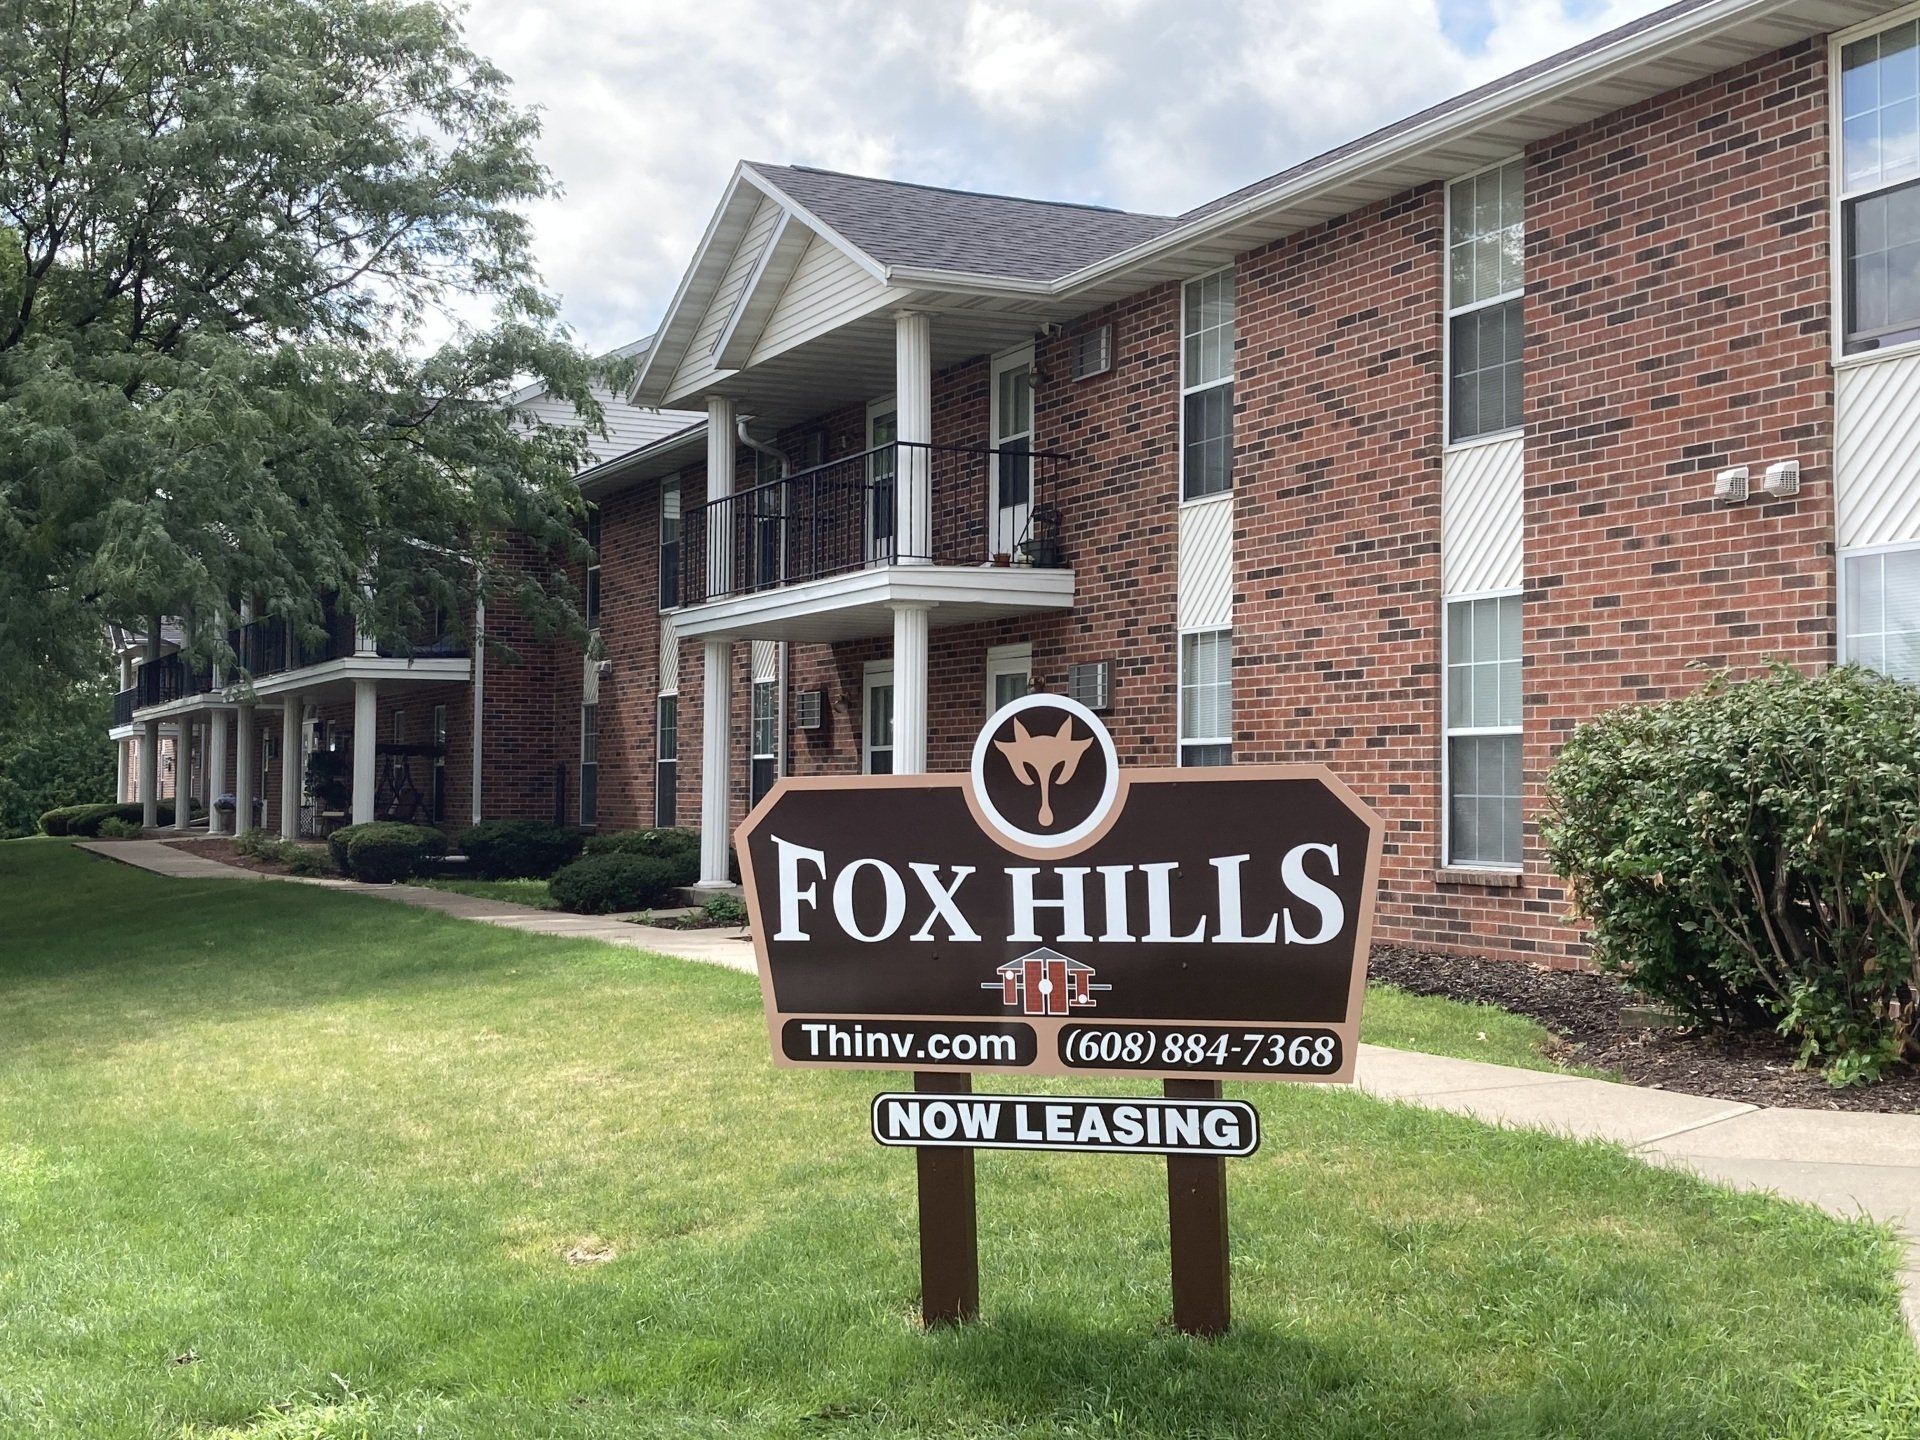 fox hills village sign